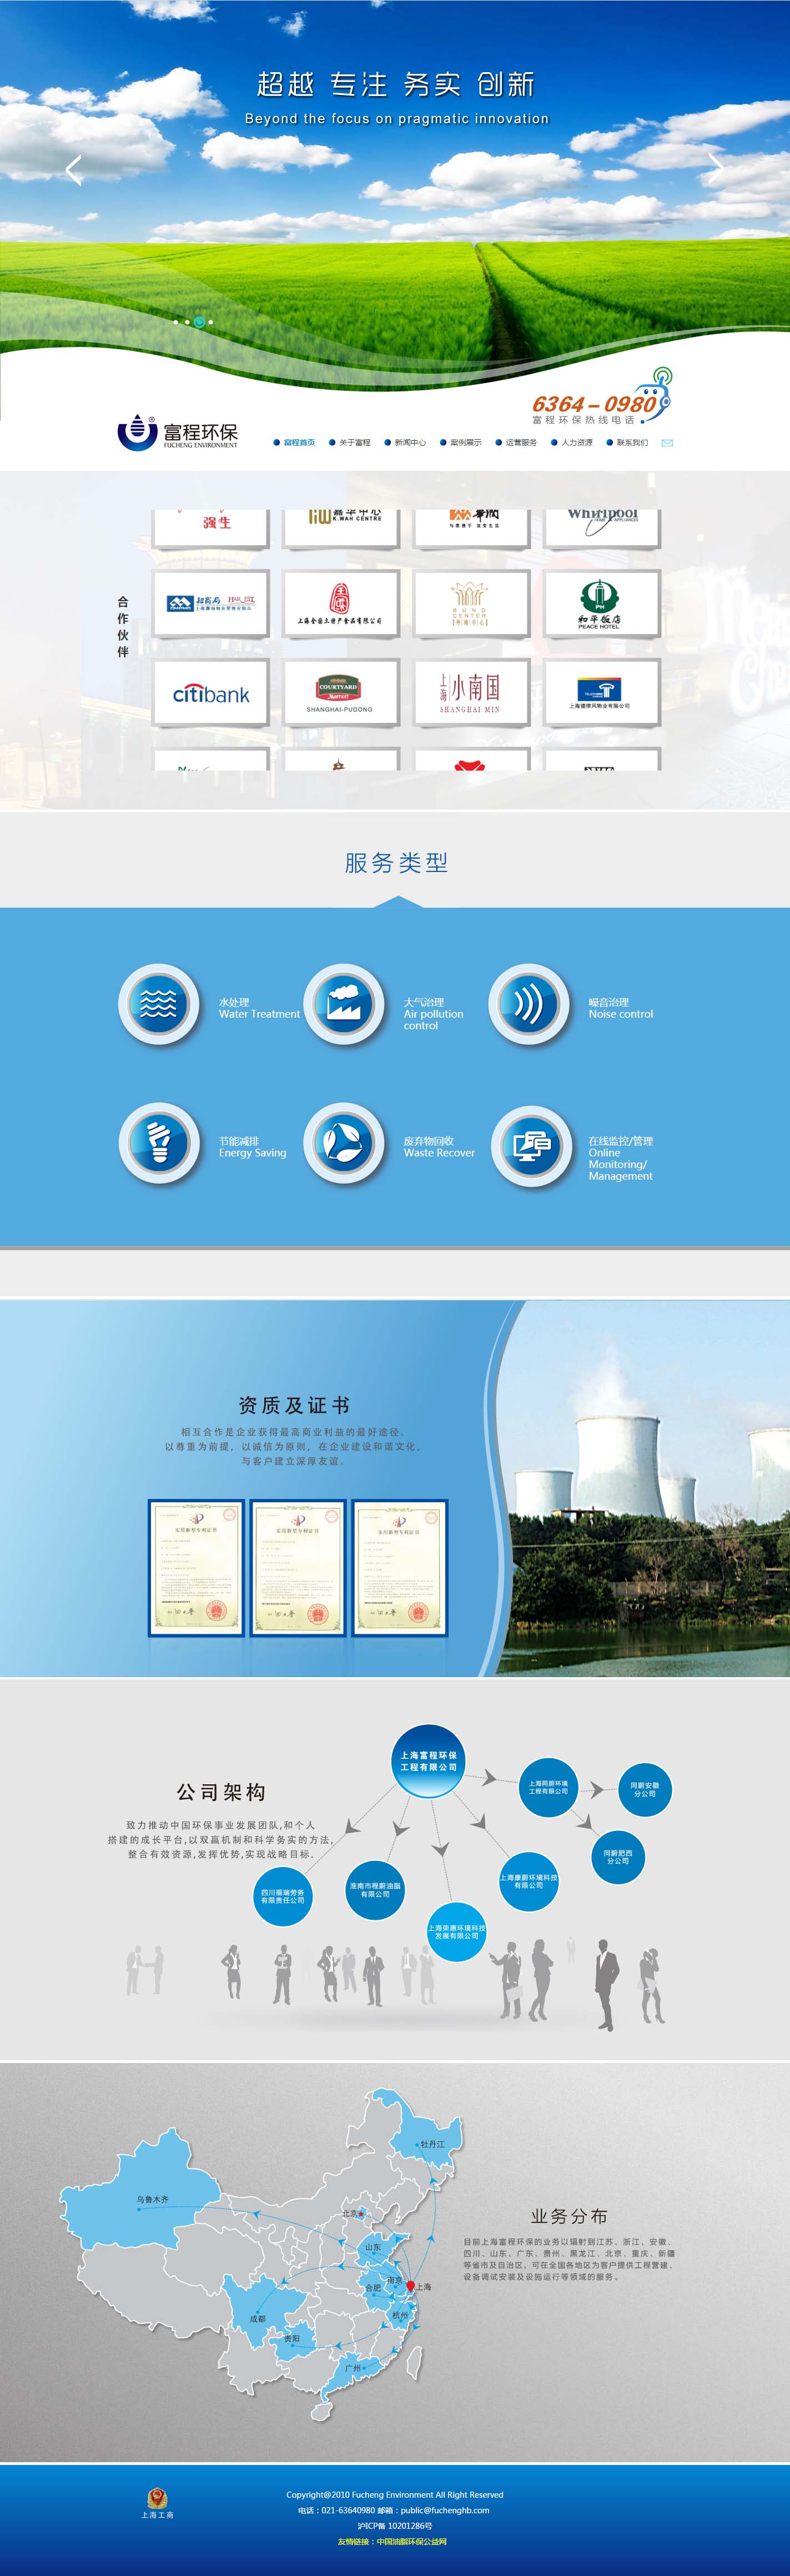 上海富程环保工程有限公司